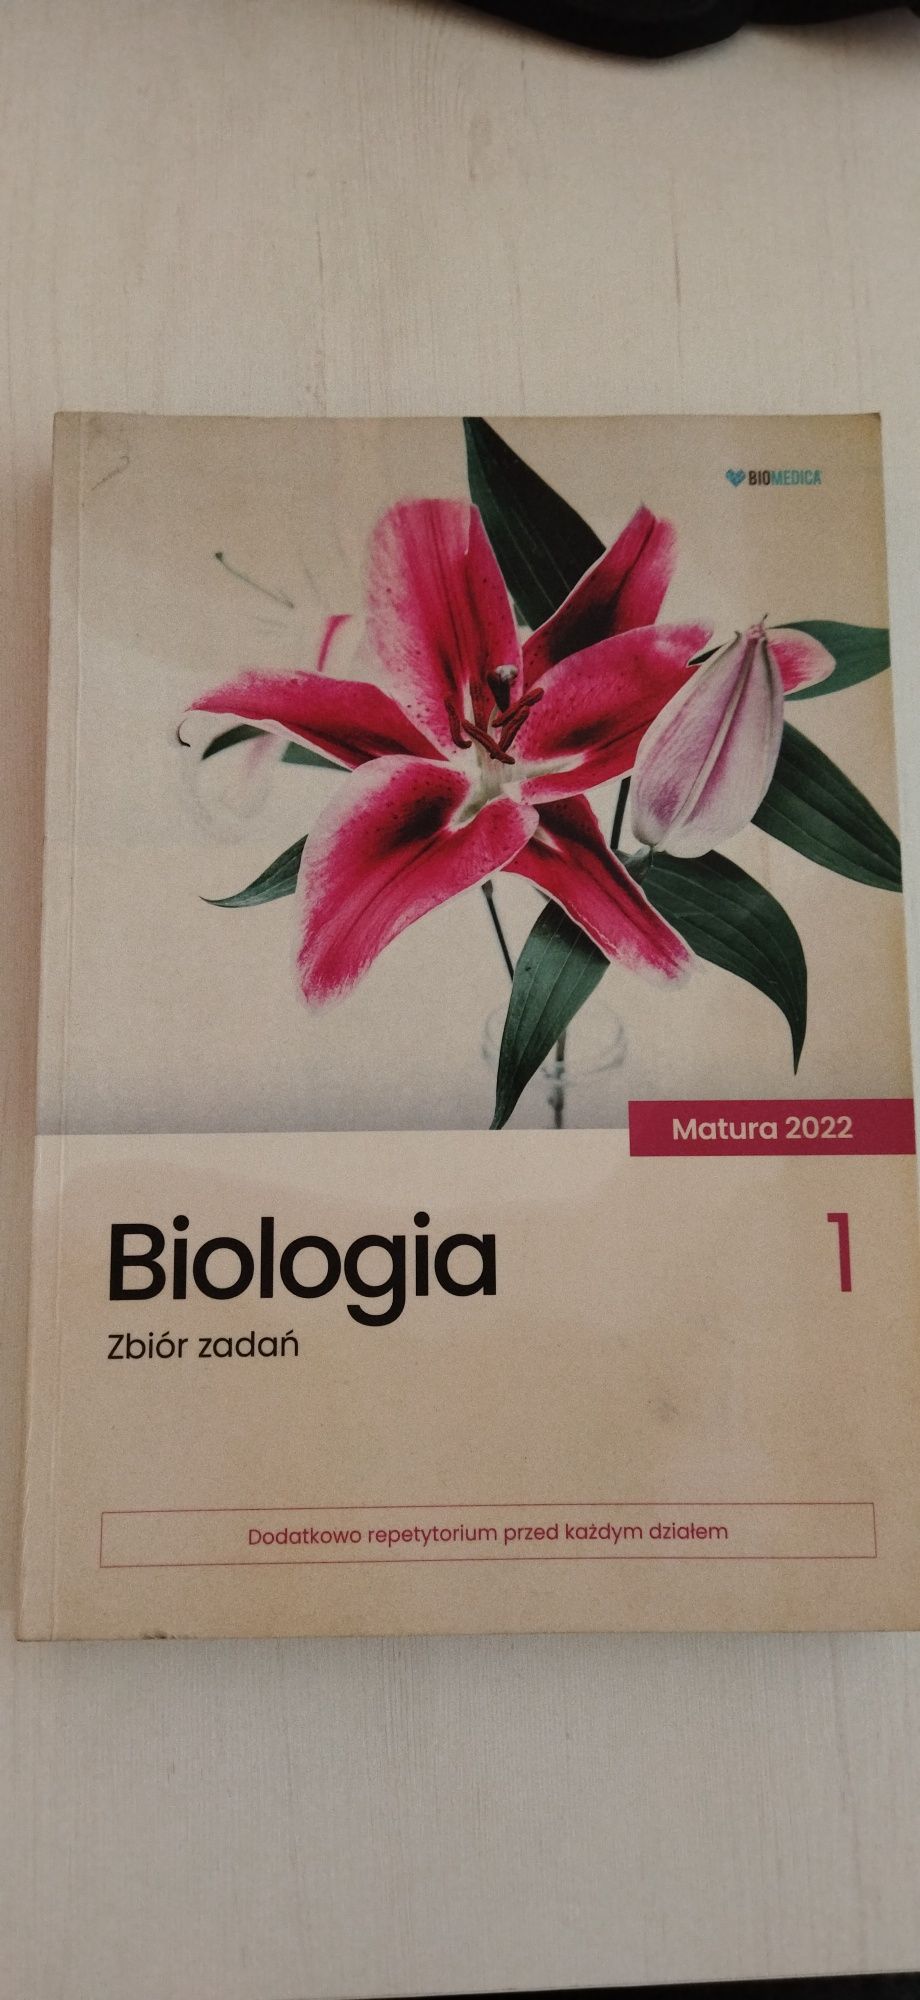 Zestaw zbiorów biomedica biologia matura 2022